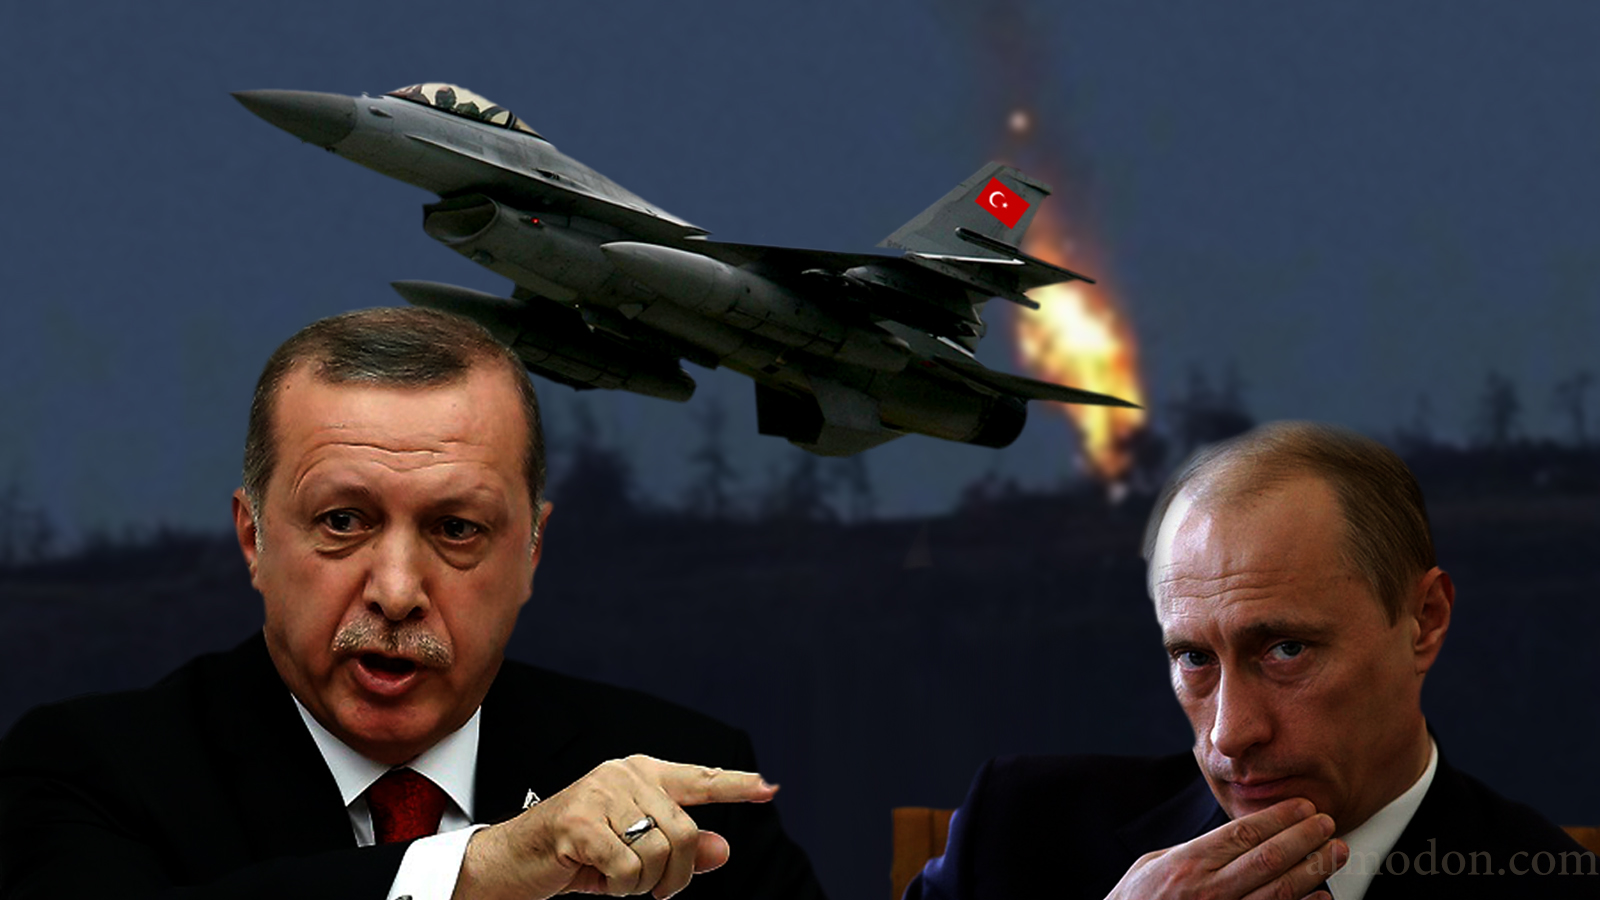 الردح بين أردوغان وبوتين: من يعتذر أولاً؟